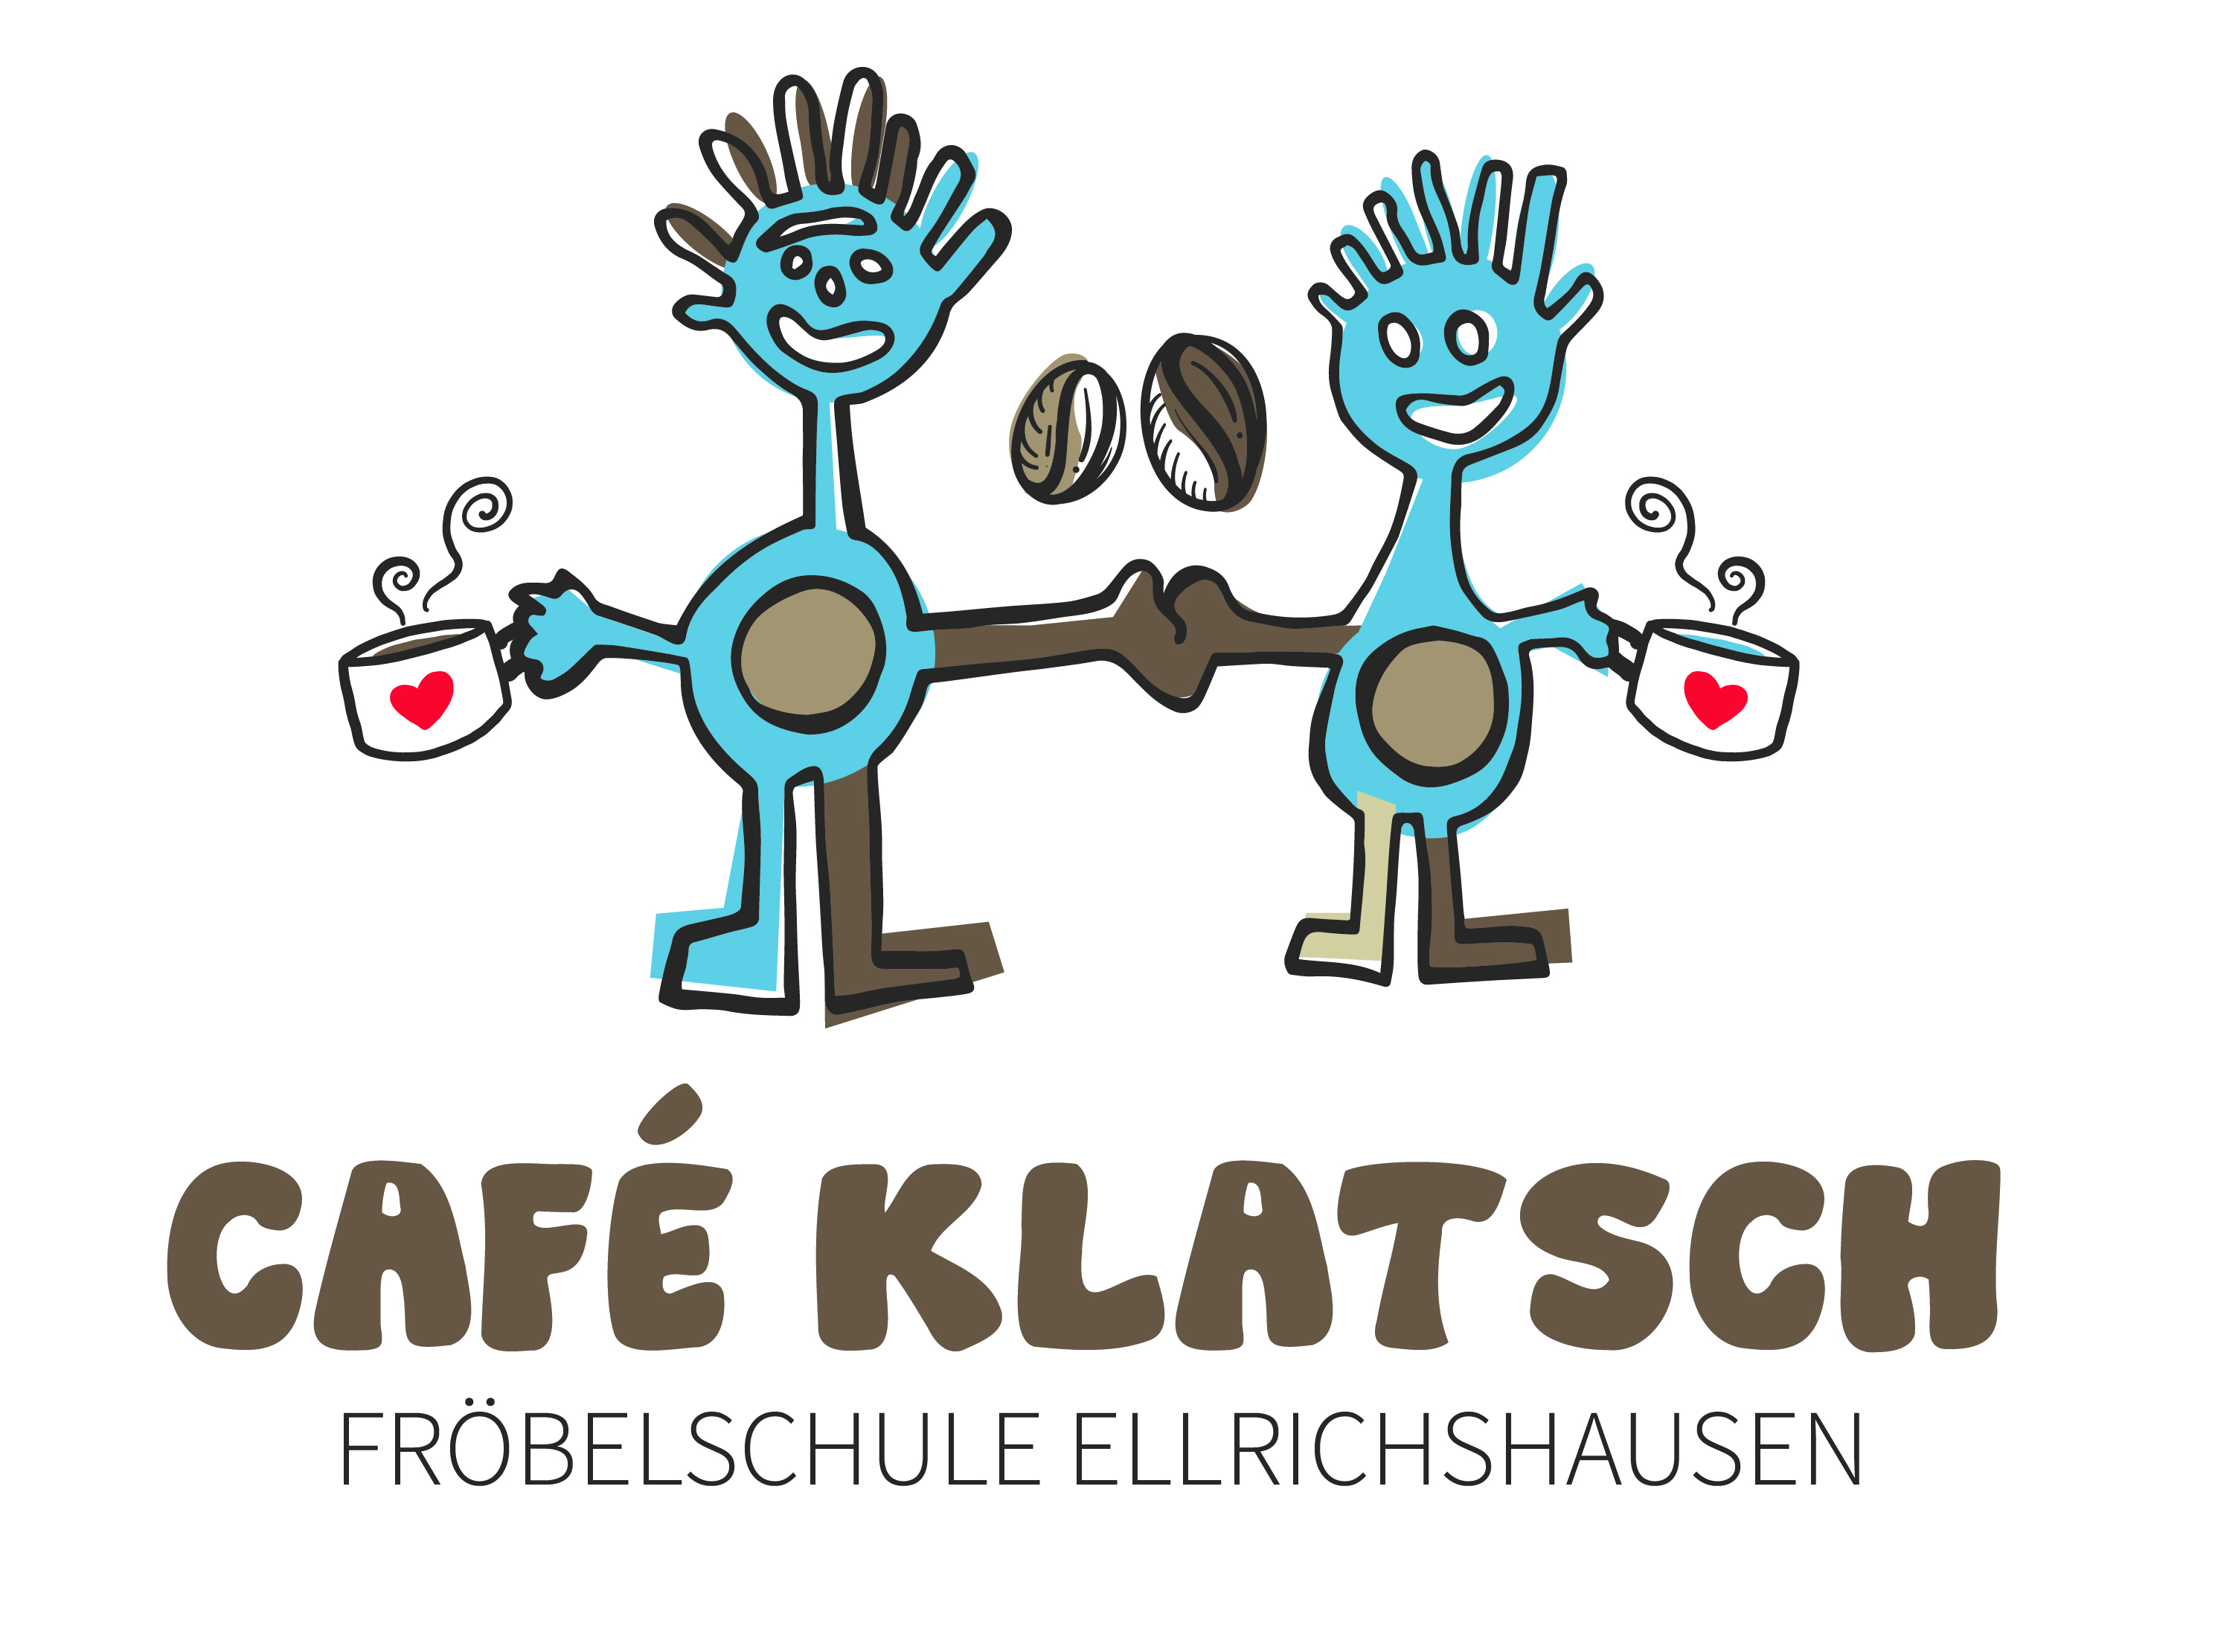  Café Klatsch Logo - Bild wird beim Klicken vergrößert 